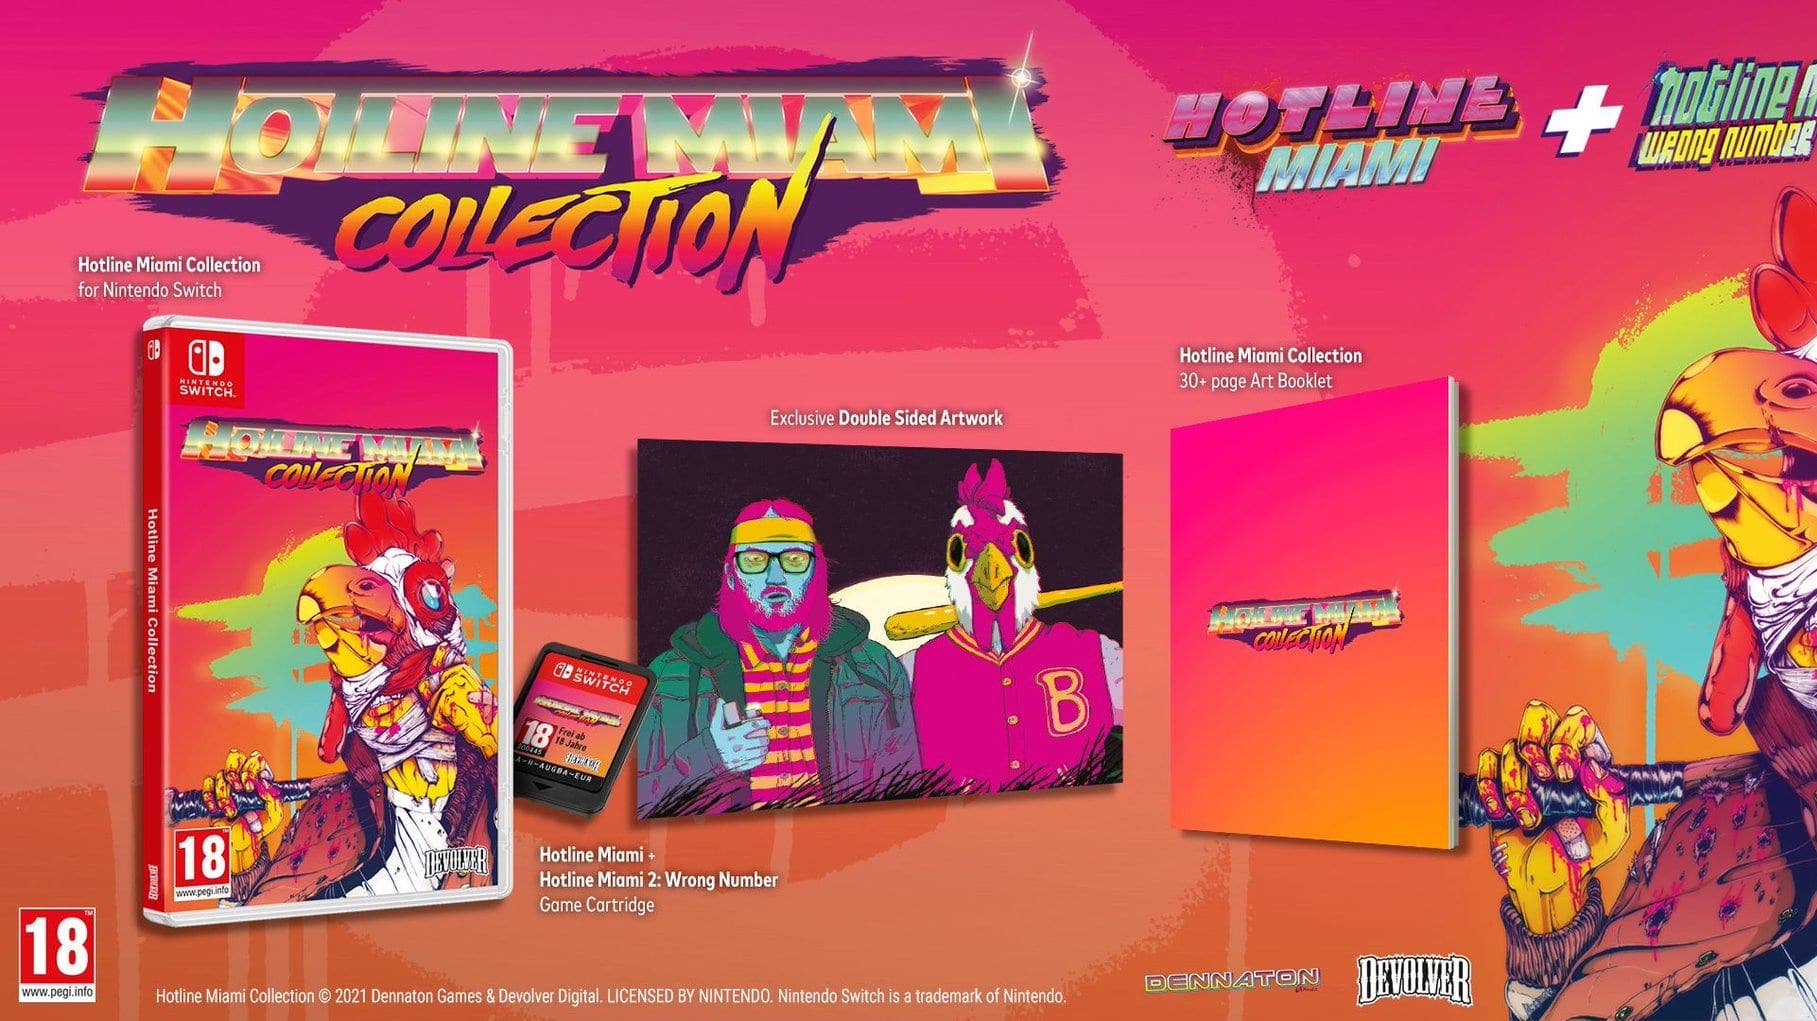 Hotline Miami Collection confirma esta edición física para Nintendo Switch